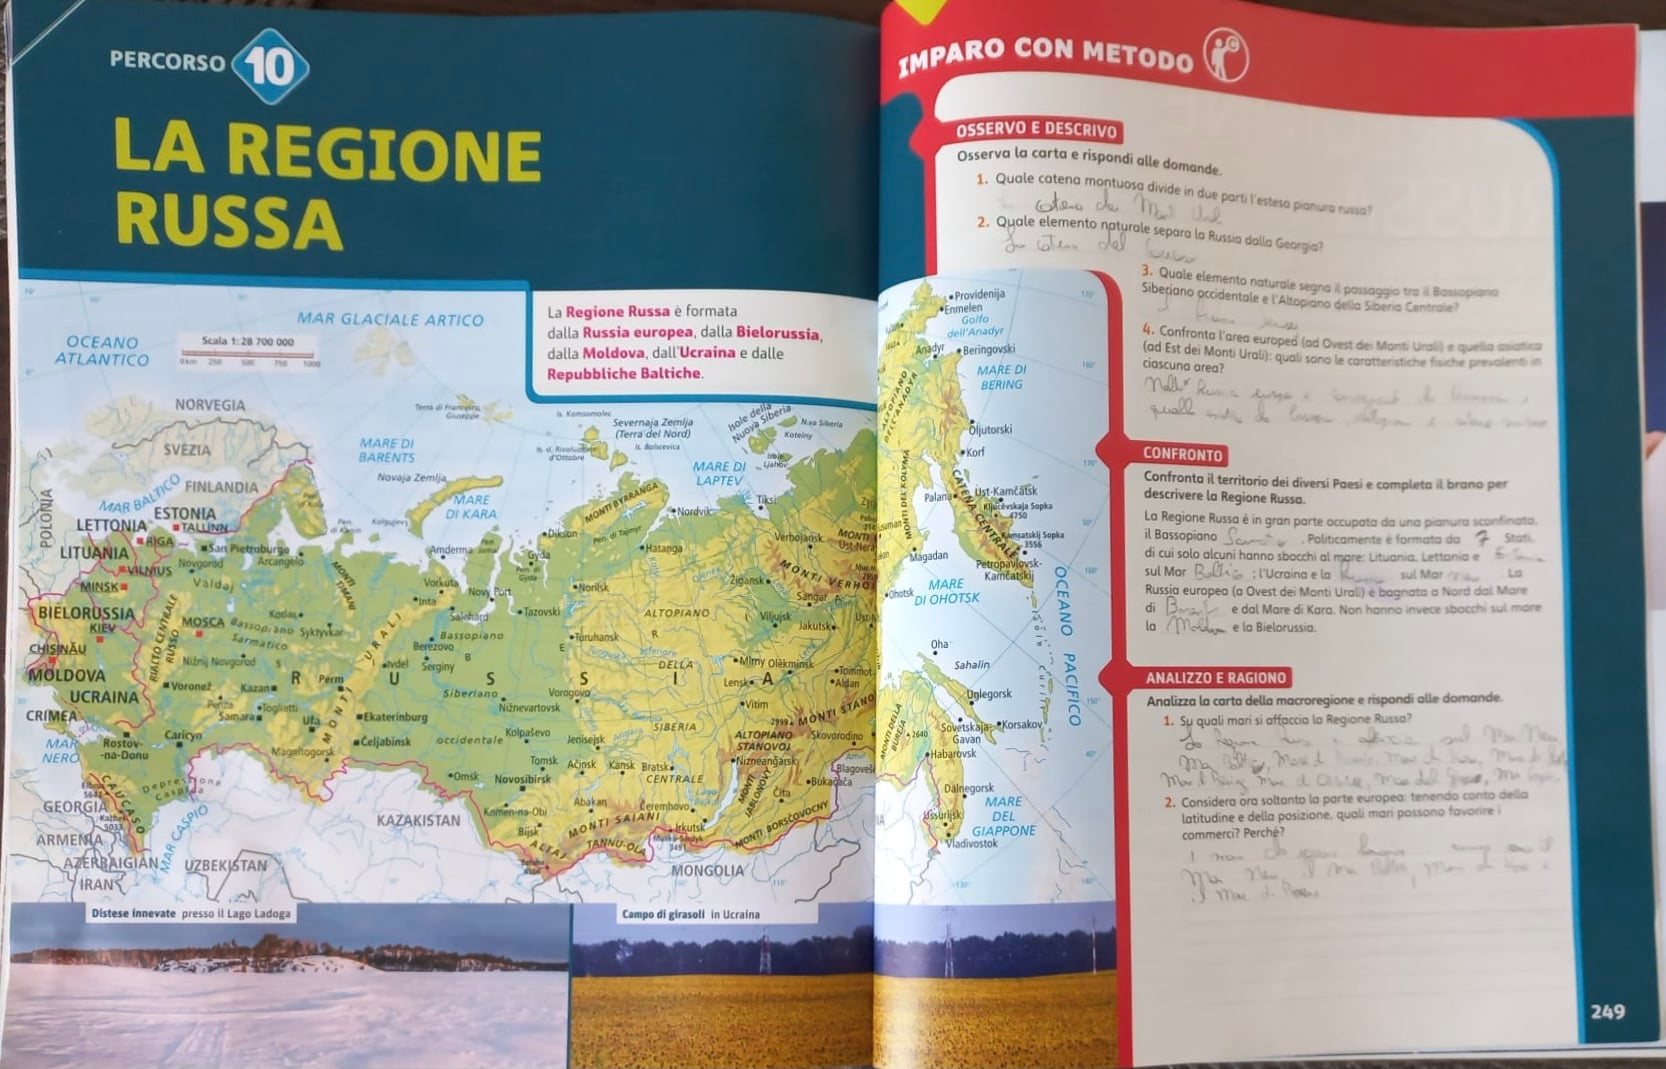 Беларусь, страны Балтии и Украину с Молдовой включили в "регион России" в итальянском учебнике по географии